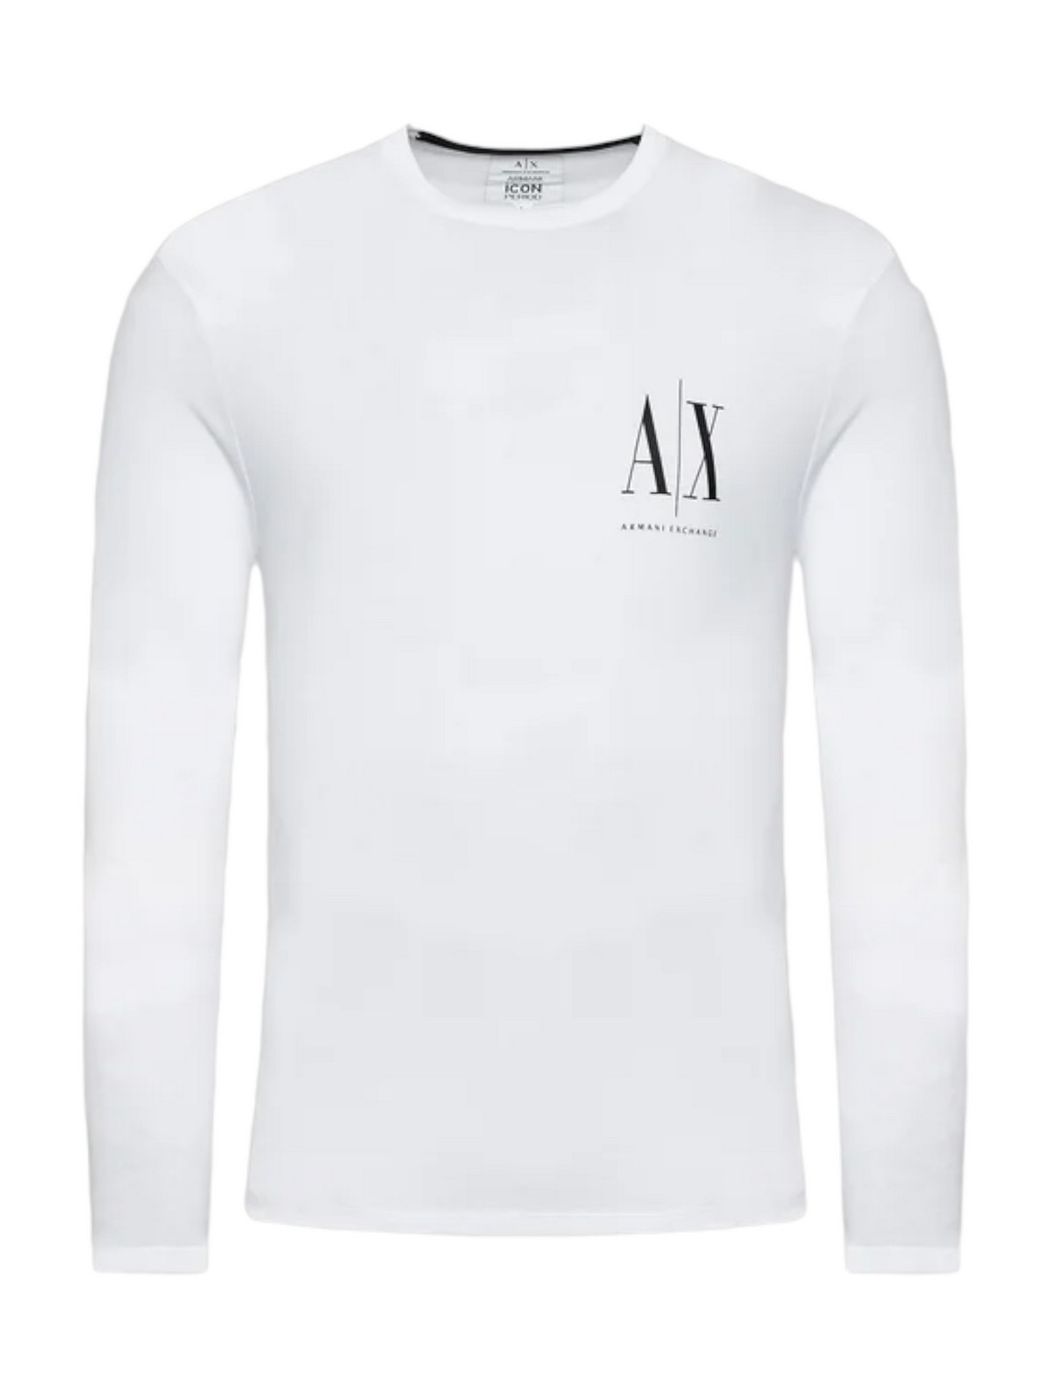 ARMANI EXCHANGE T-Shirt e Polo Uomo  8NZTPL ZJH4Z 1100 Bianco